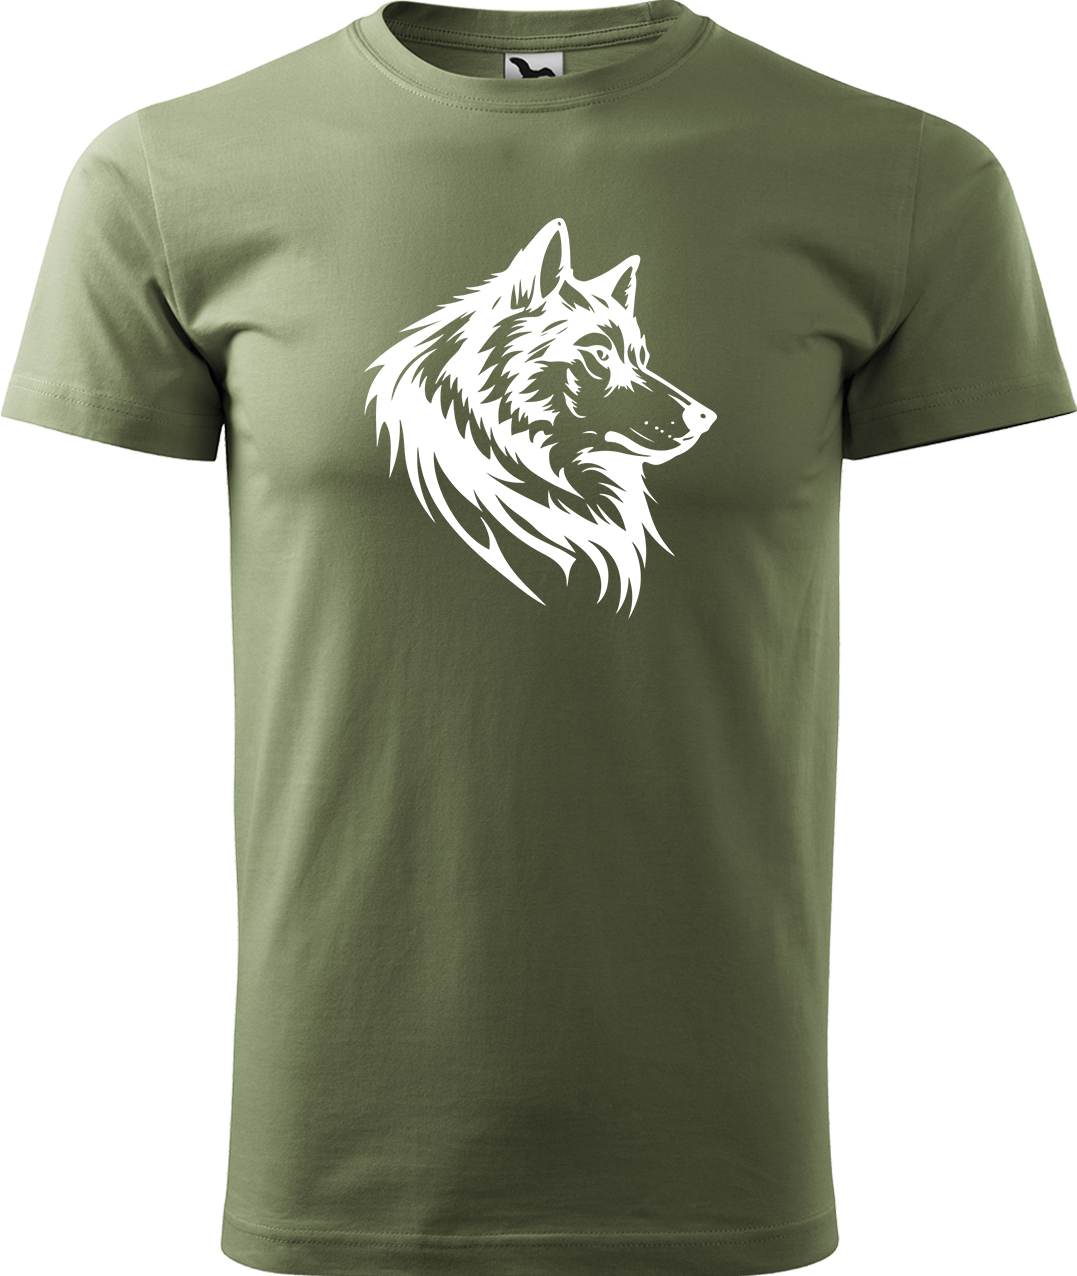 Pánské tričko s vlkem - Wolf Velikost: 4XL, Barva: Světlá khaki (28), Střih: pánský